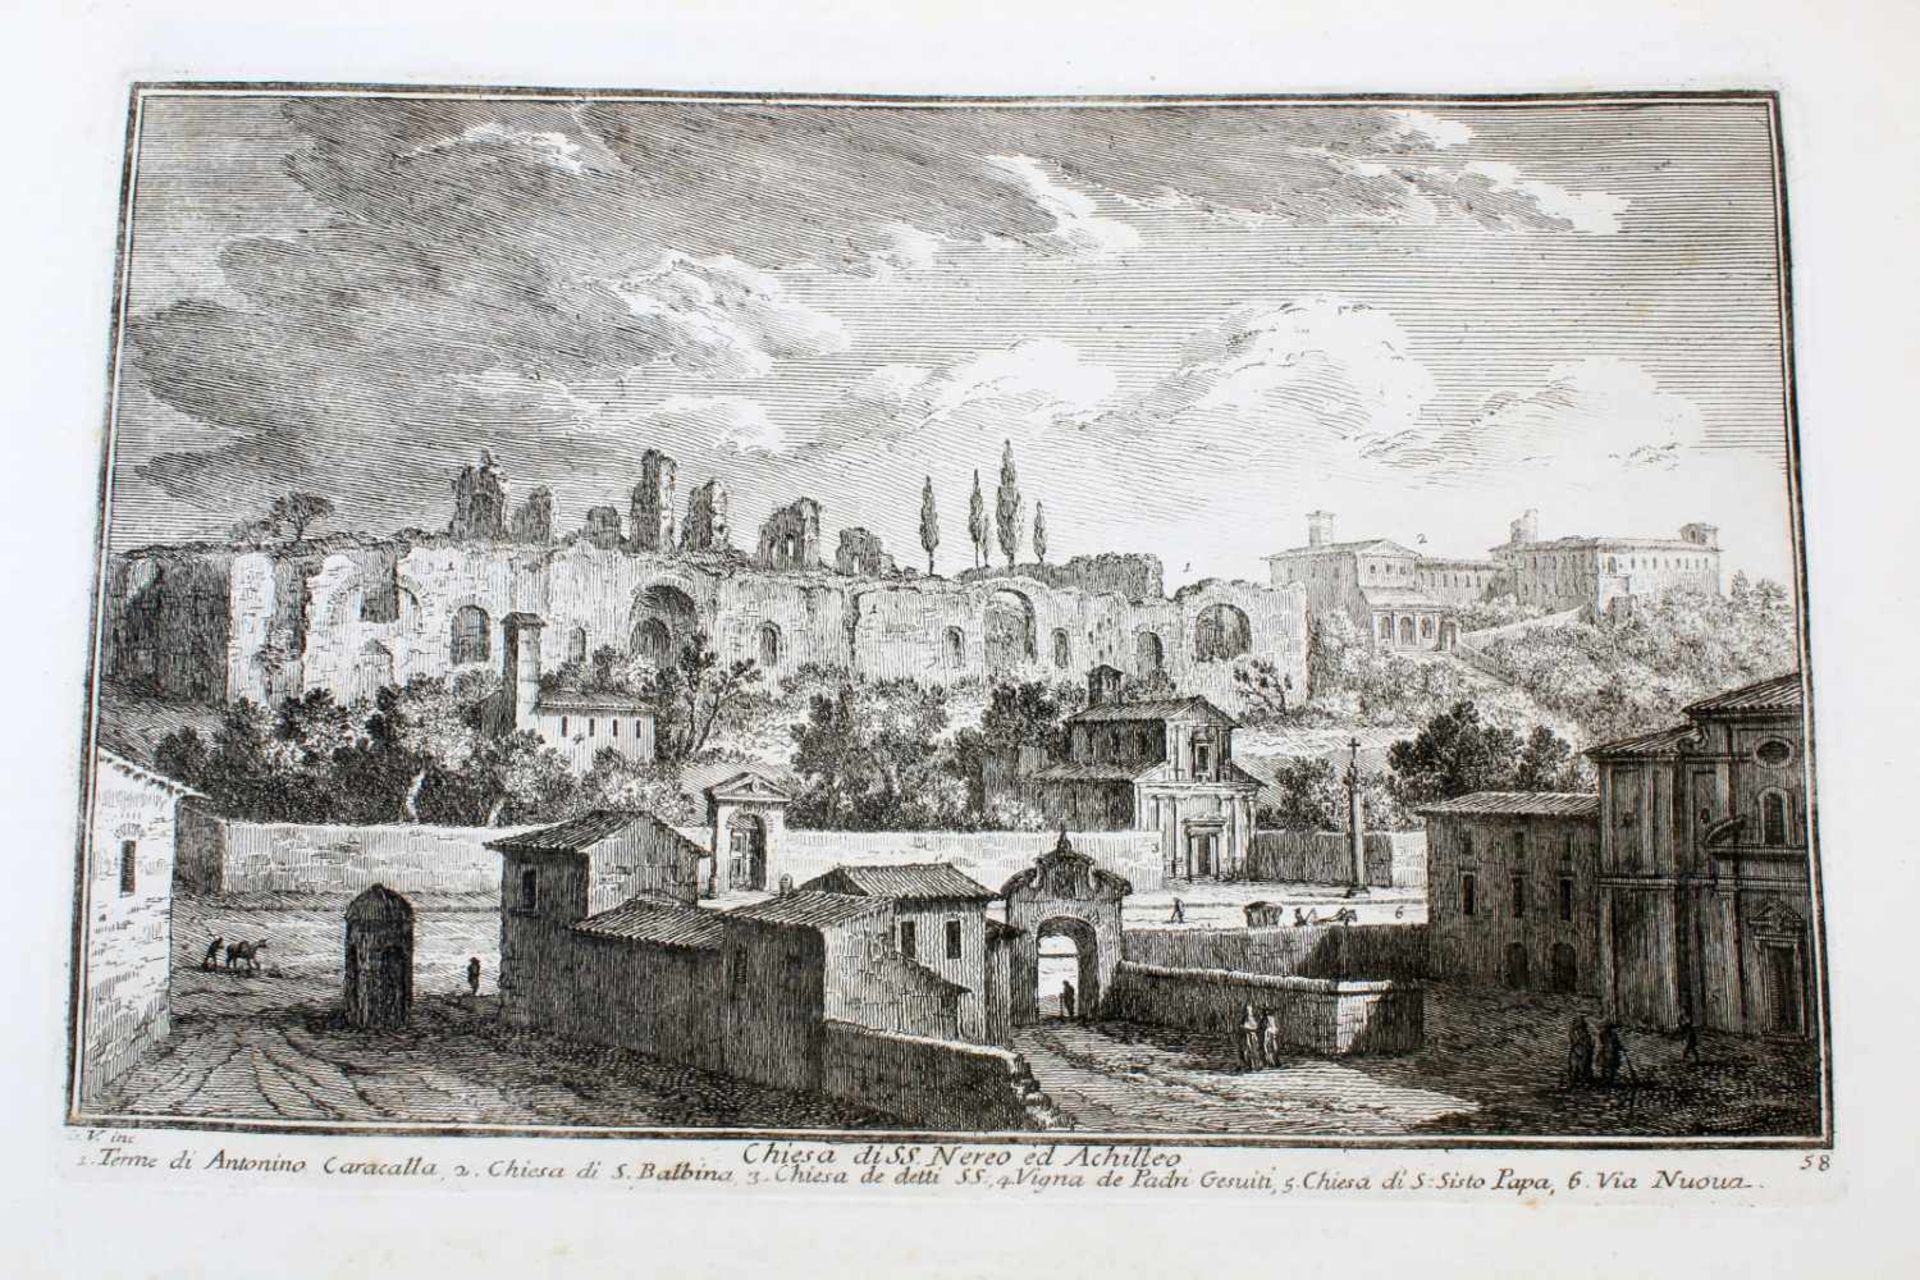 Roma - 64 Originalradierungen Ansichten von Rom - Giuseppe Vasi (1710 - 1782)Die Radierungen sind - Bild 29 aus 69